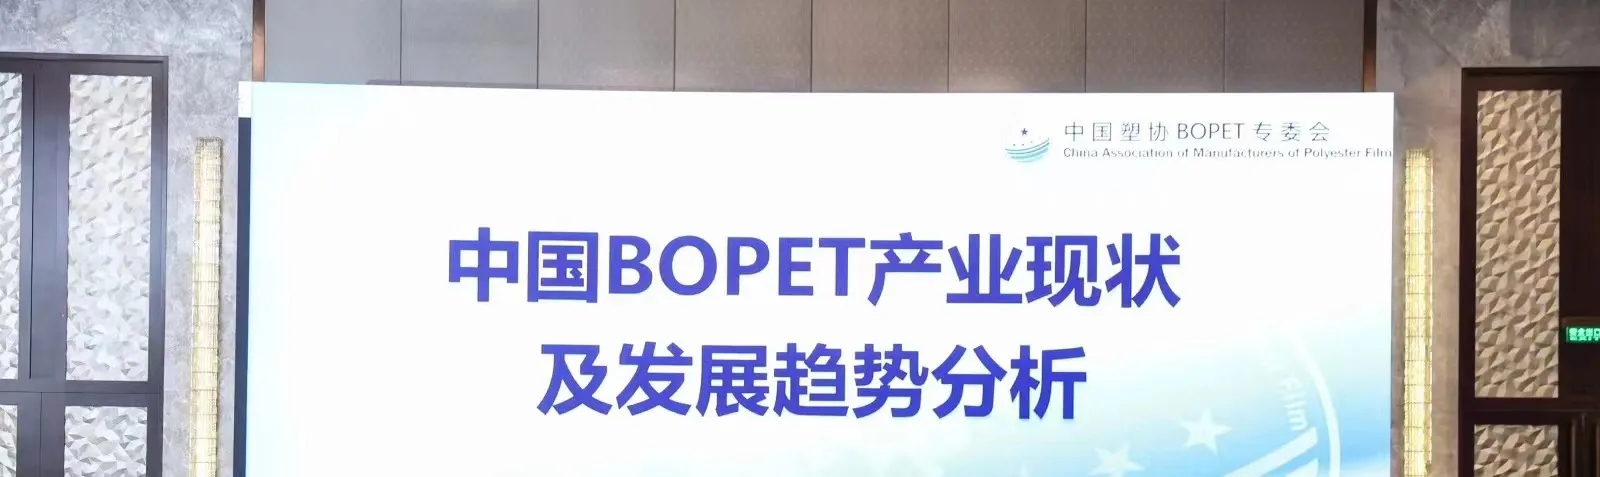 Konferencja dotycząca aktualnej sytuacji i trendów rozwojowych chińskiego przemysłu BOPET